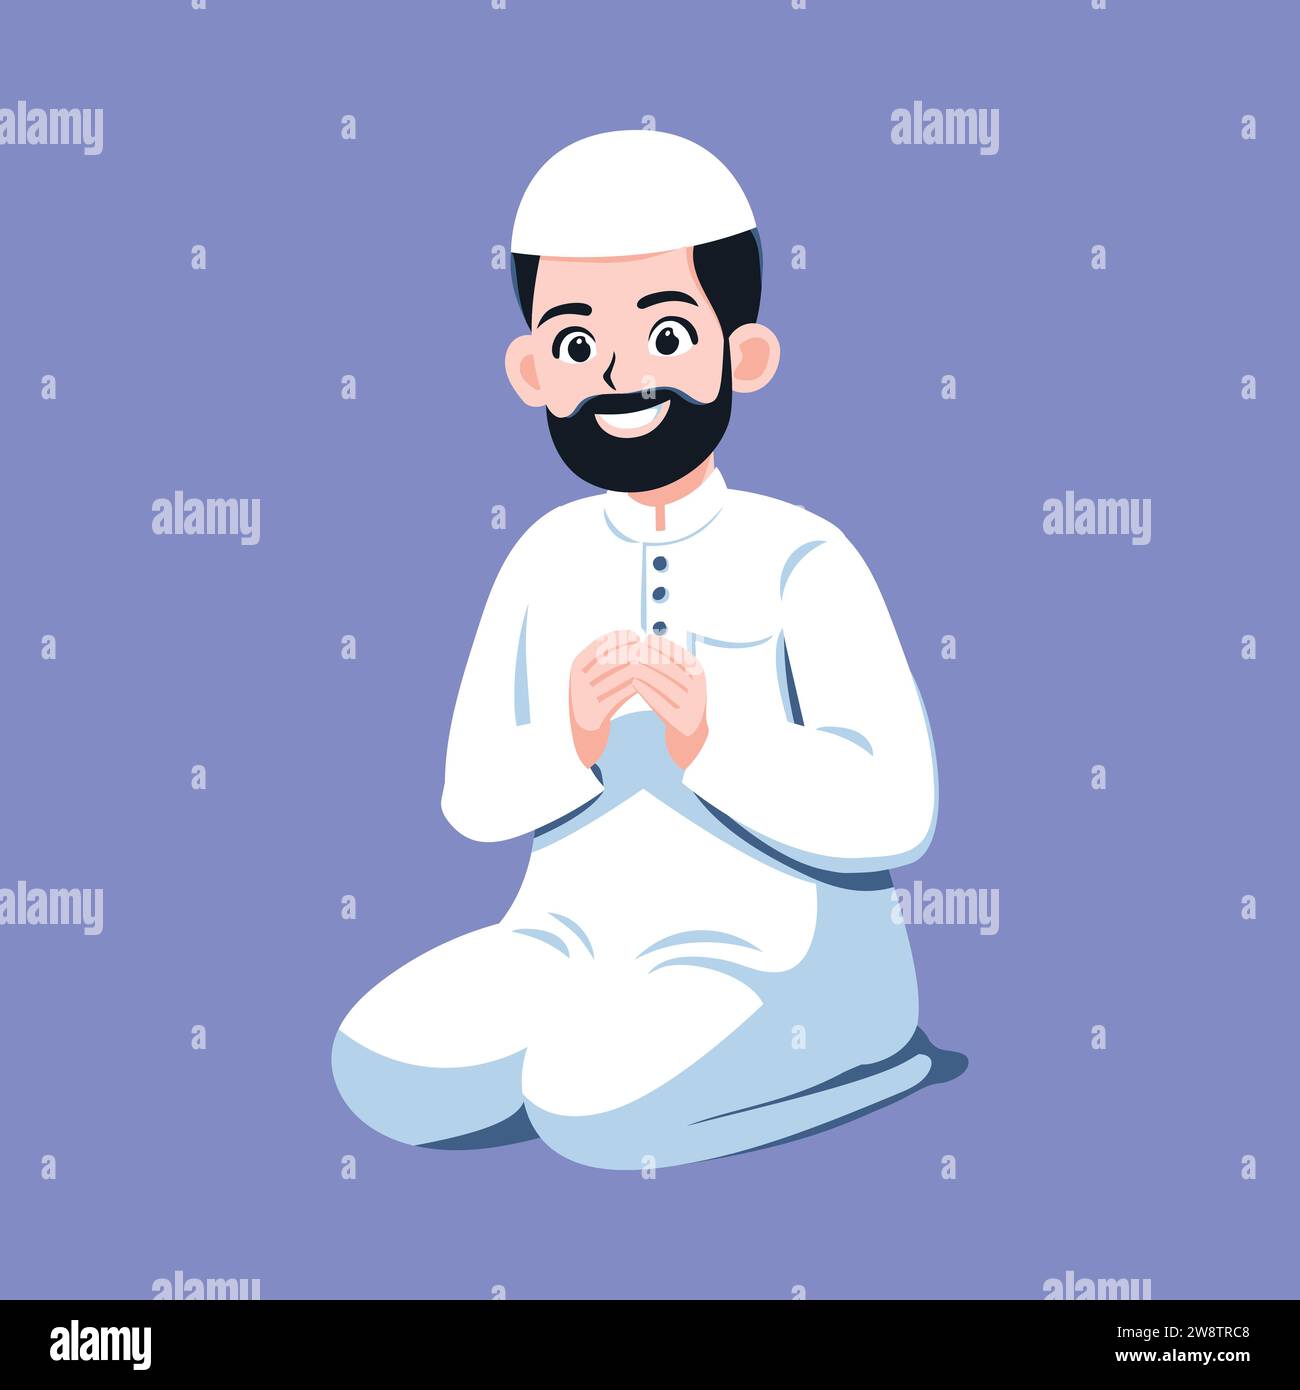 Muslimischer Mann betet. Gebete in der Gemeinde. Muslimischer Mann betet in weißer Kleidung, isolierte Zeichentrick-flache Vektor-Illustration. Stock Vektor